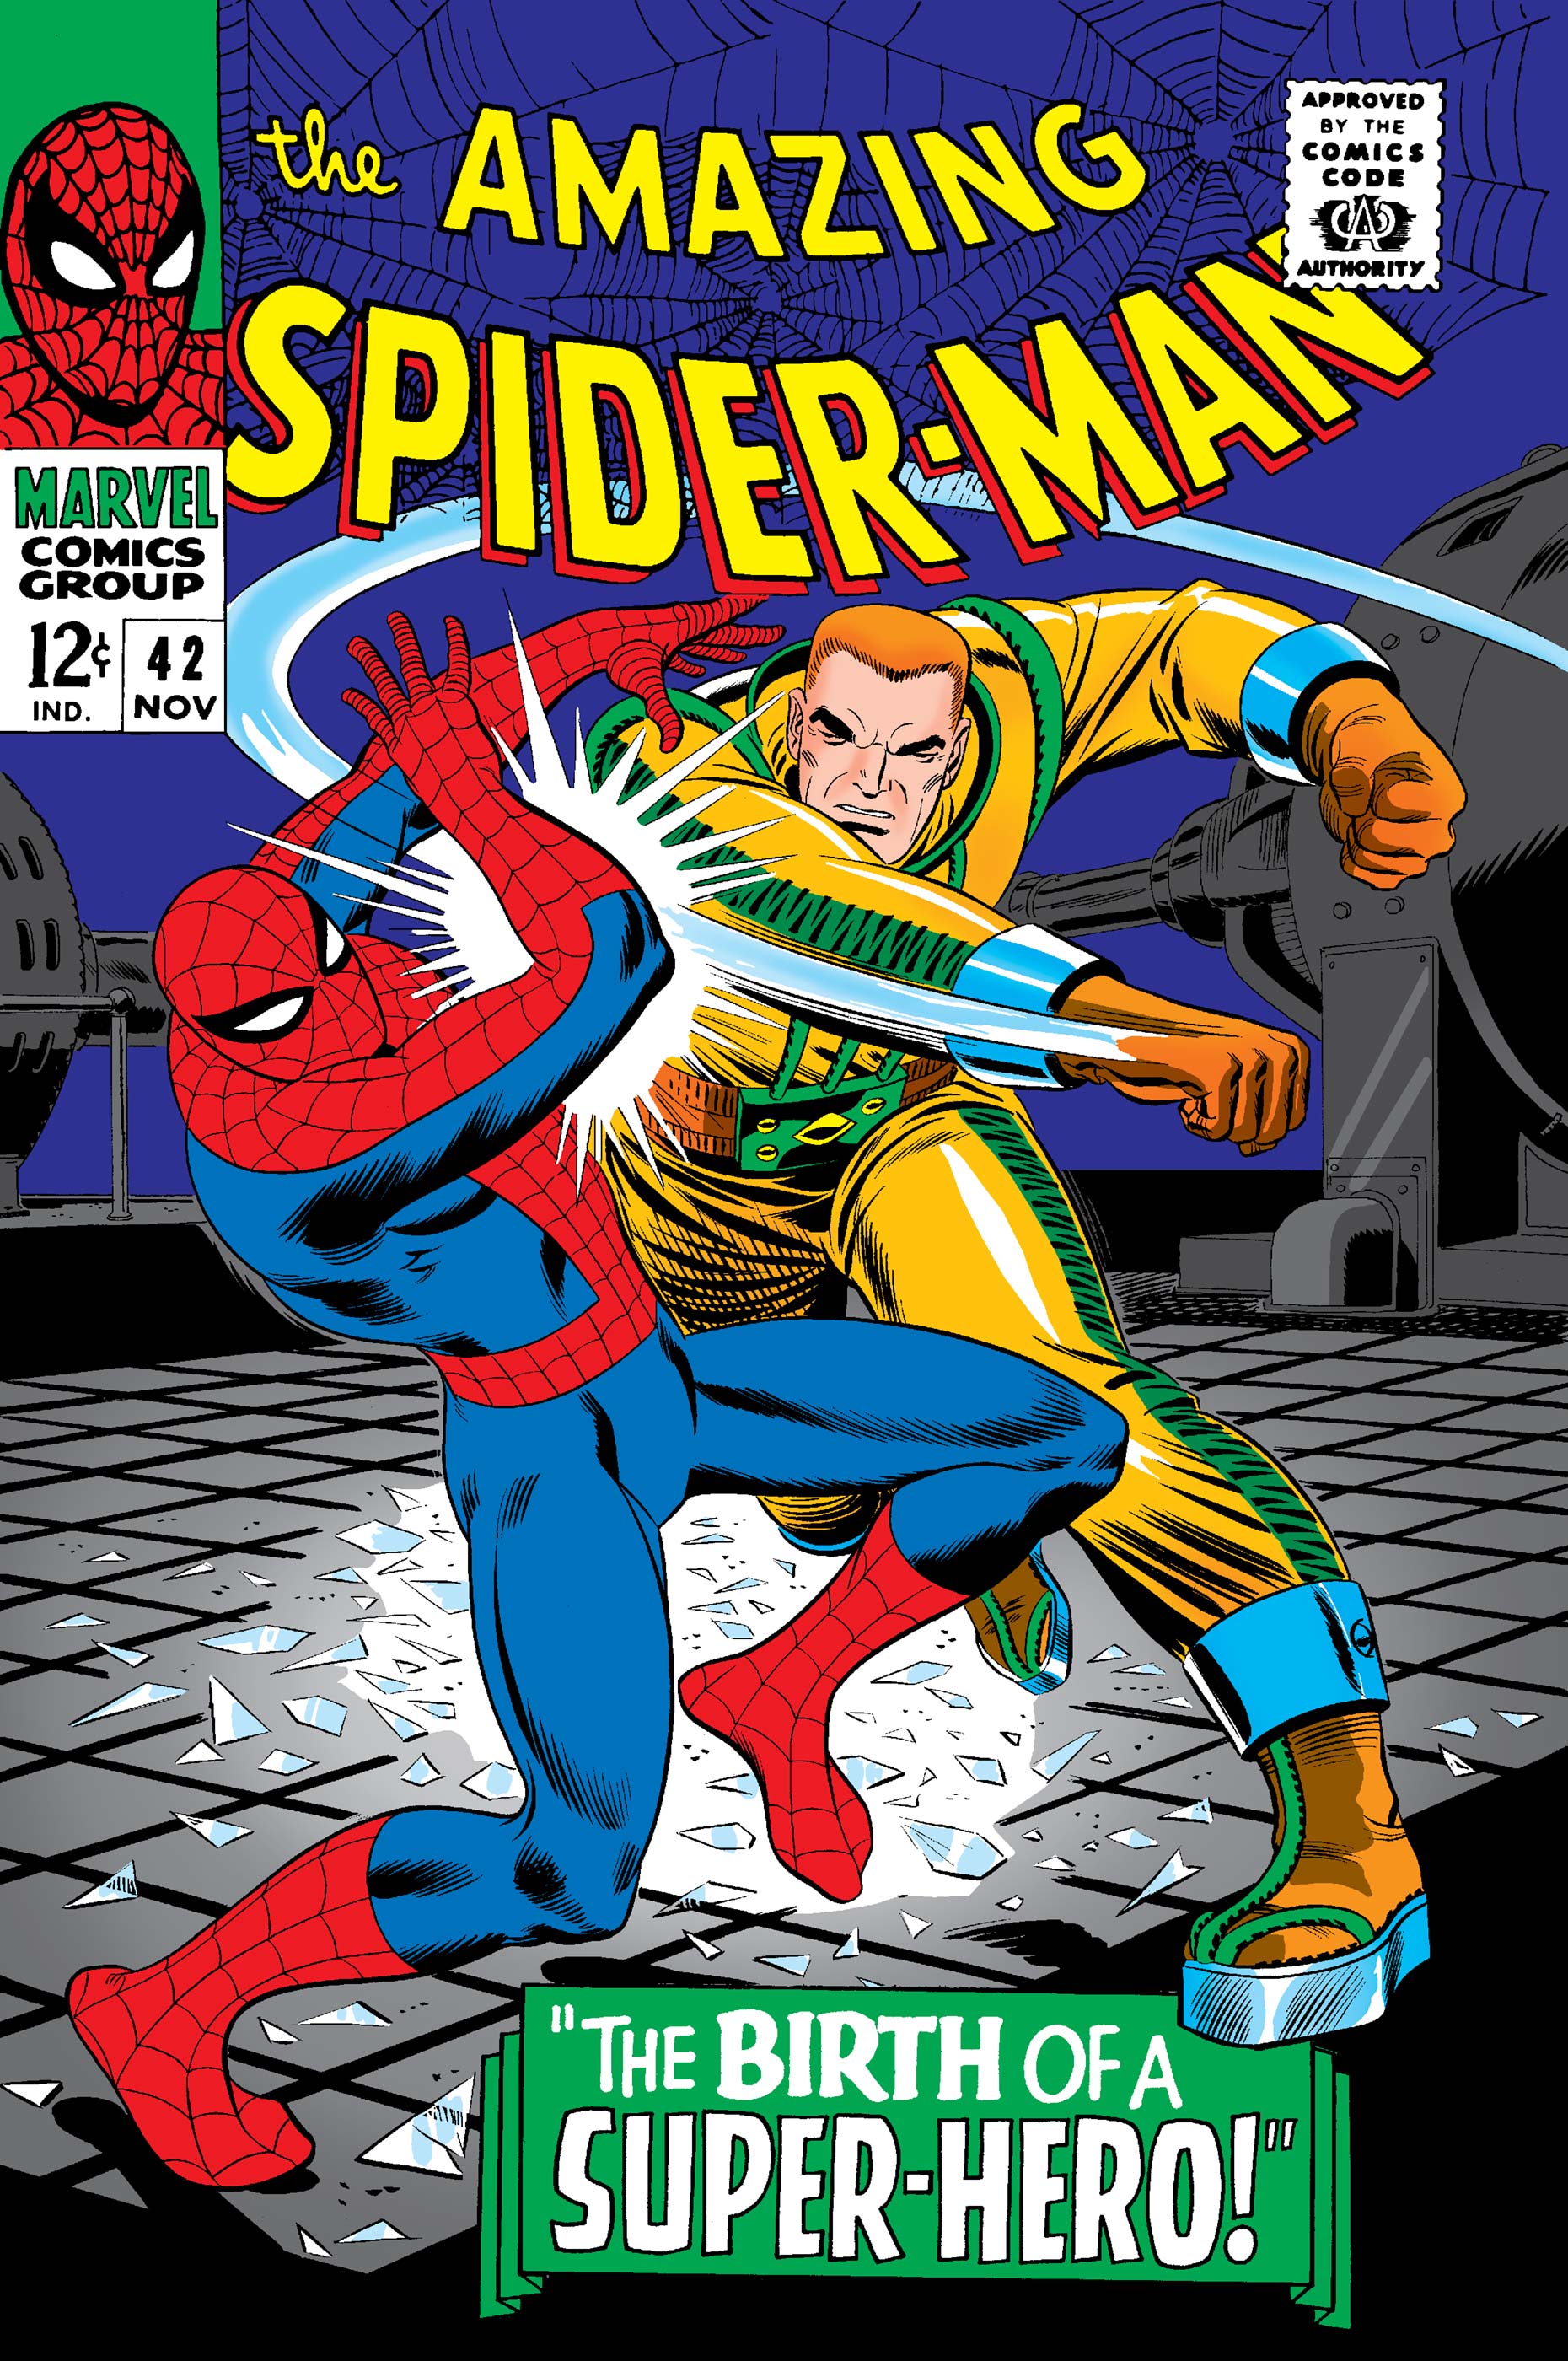 Spider man 42